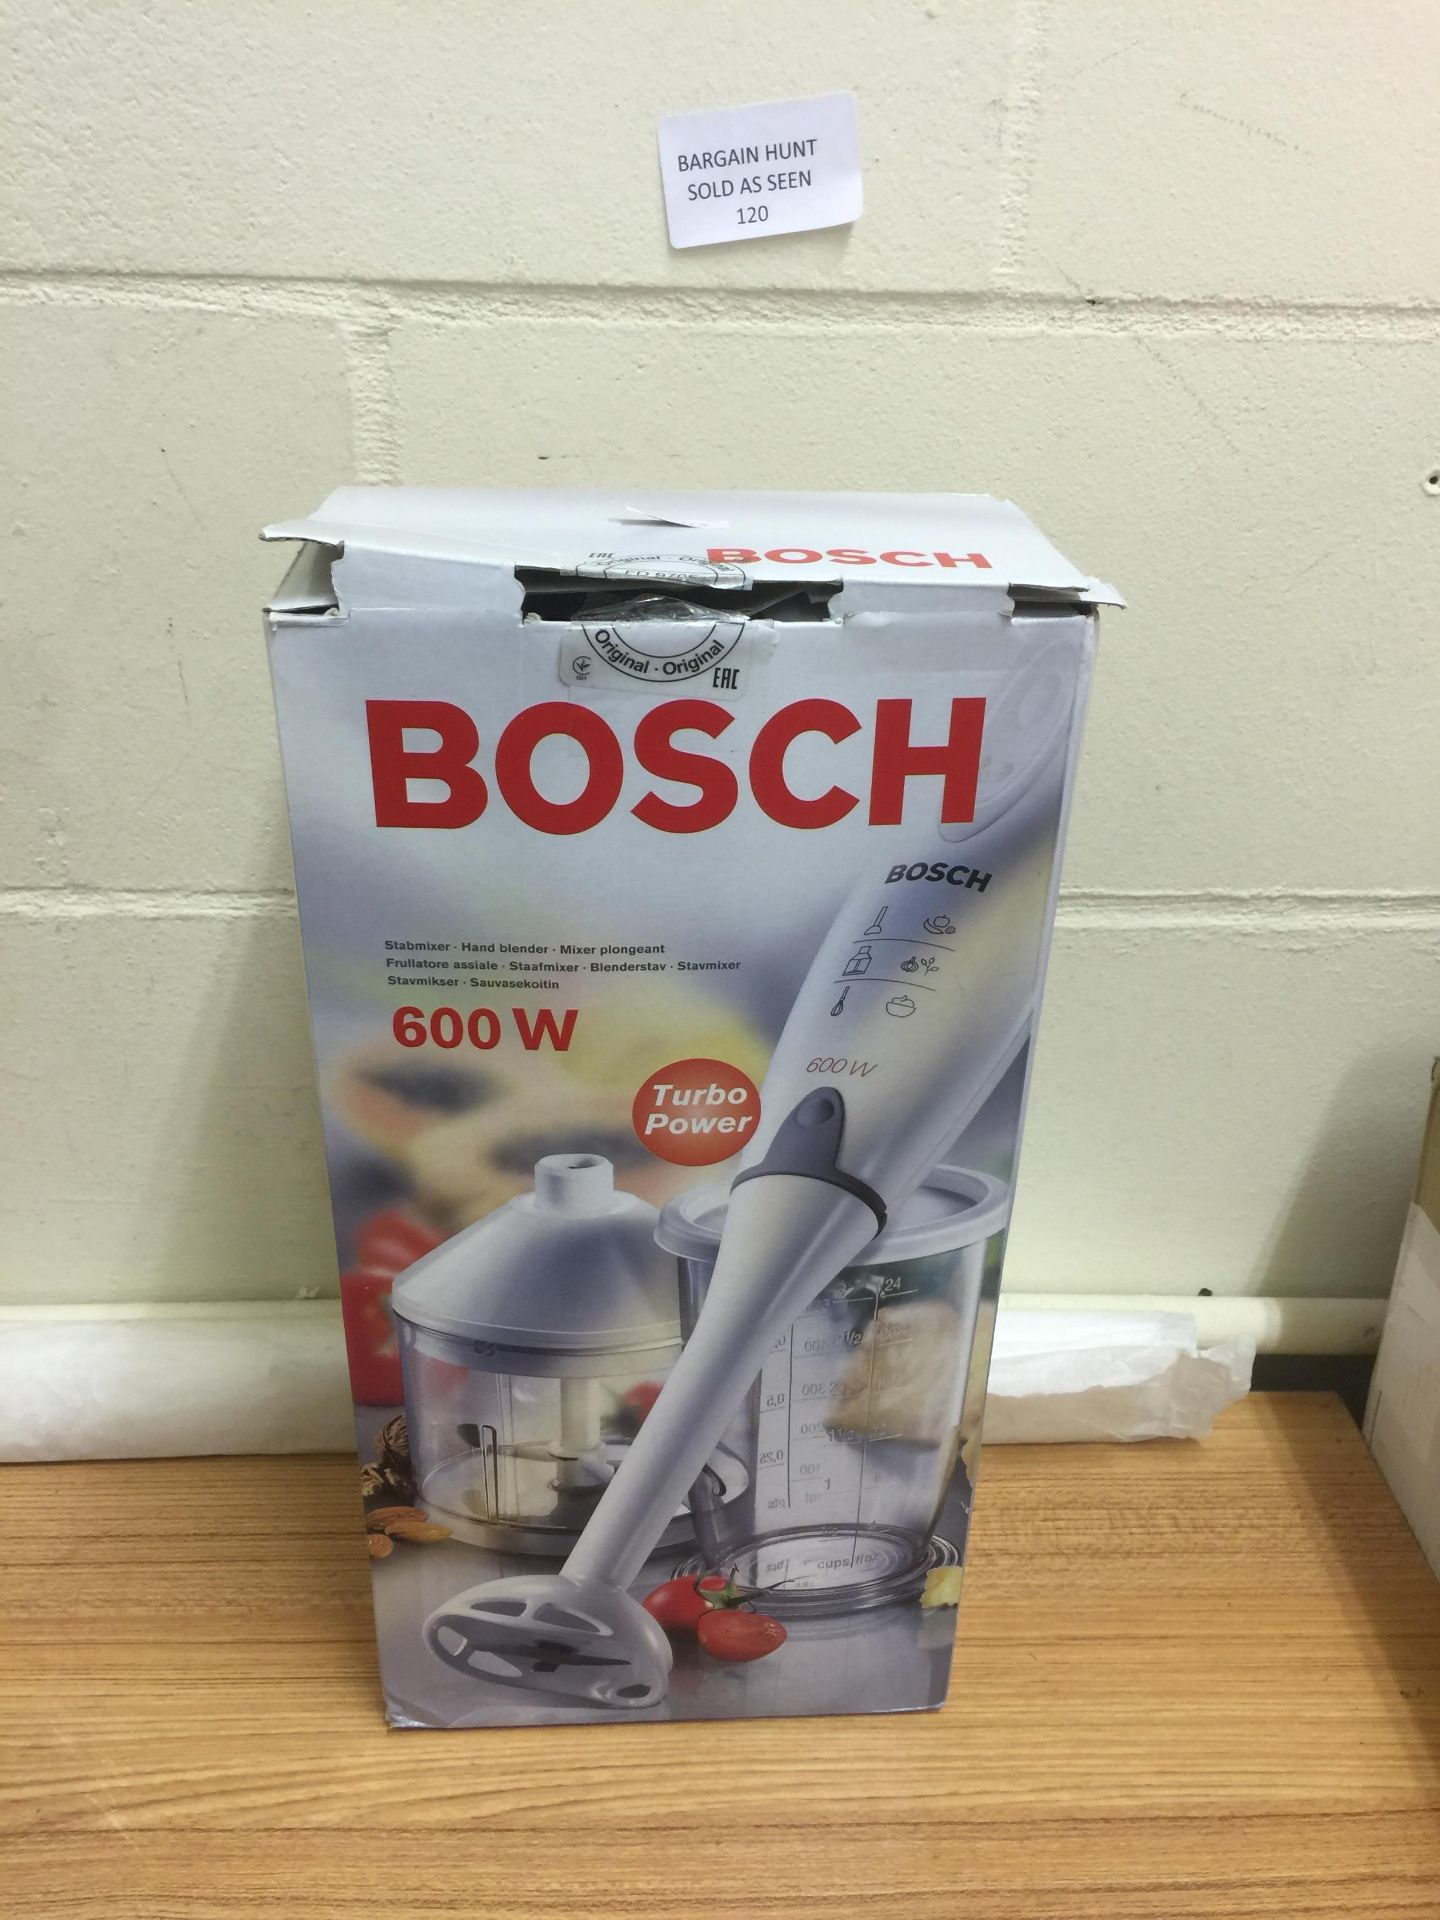 Bosch Hand Blender